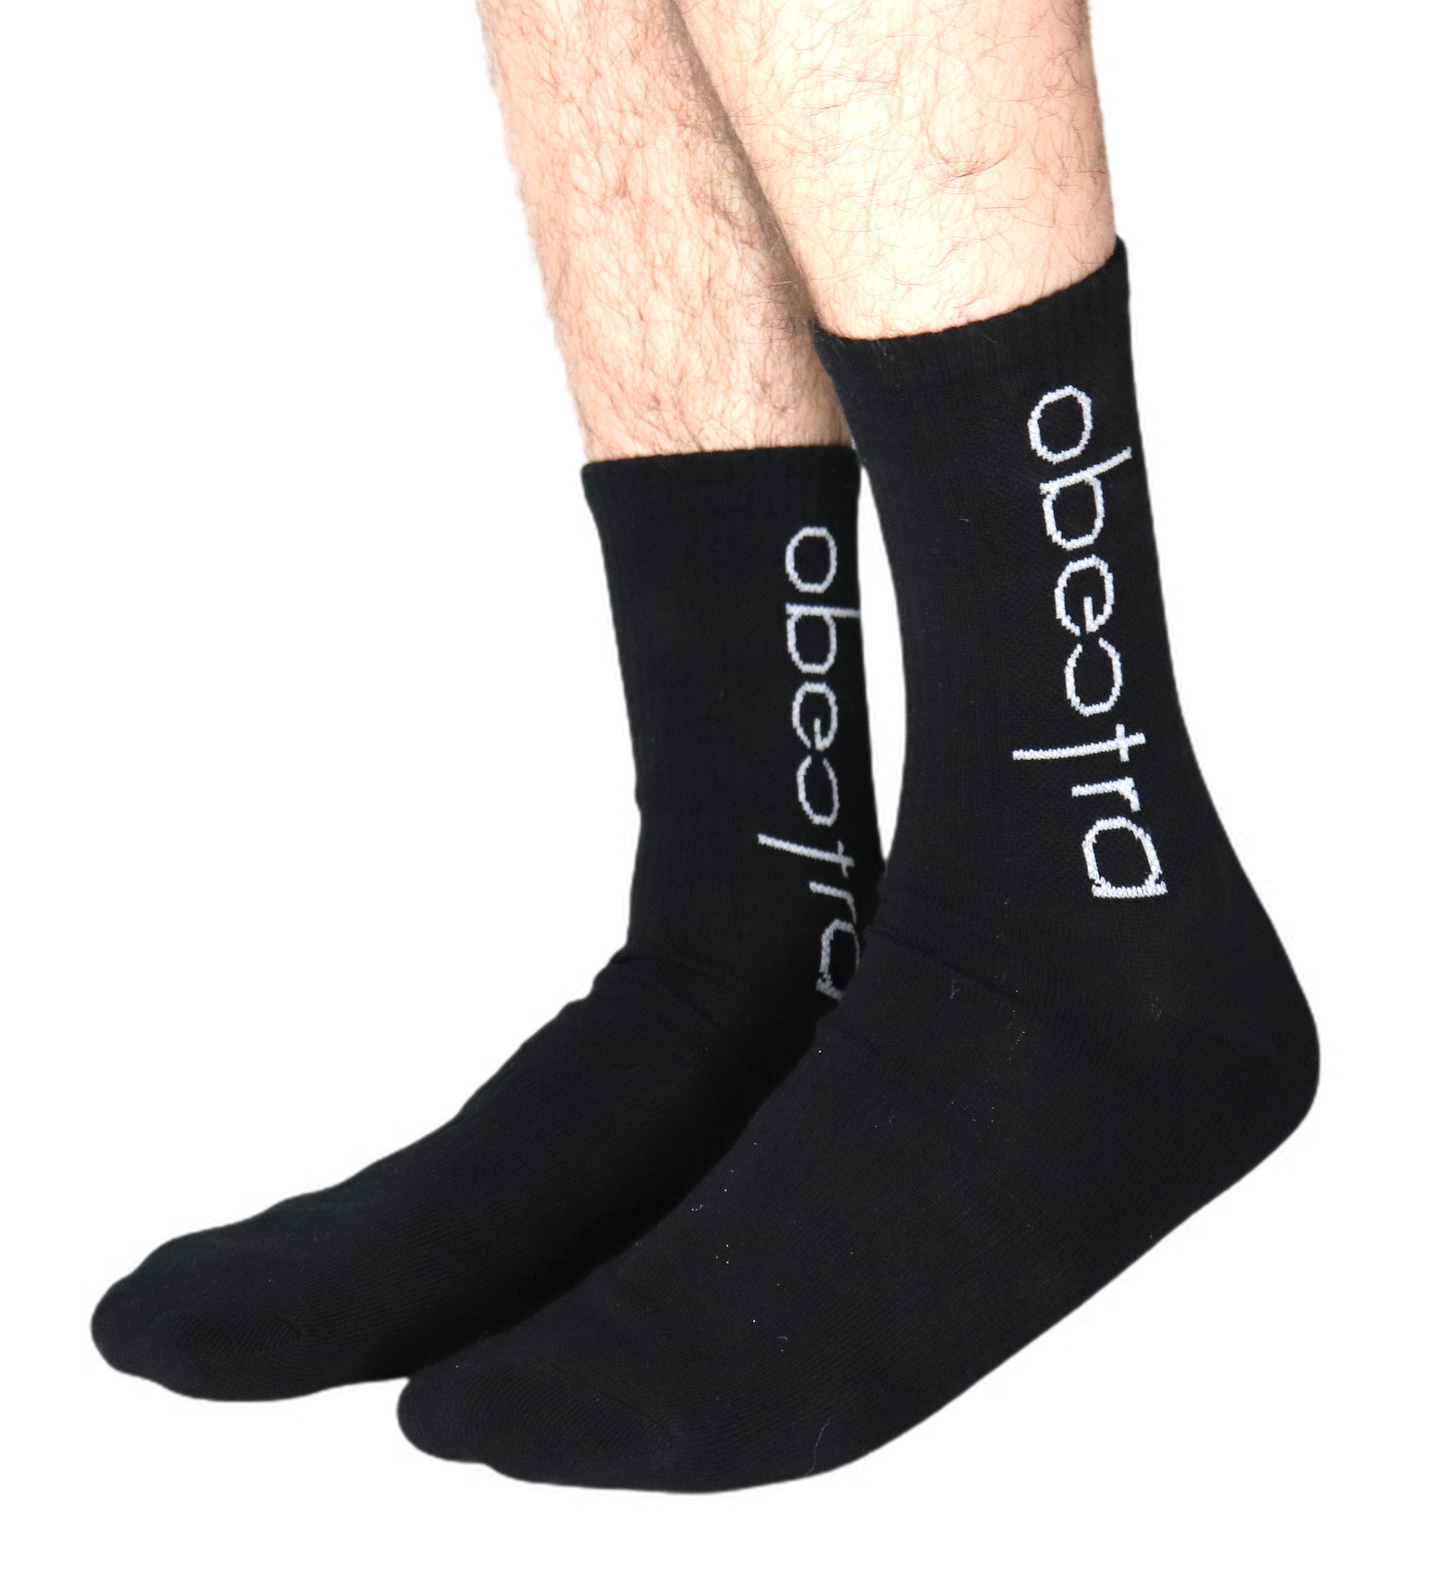 Obectra socks